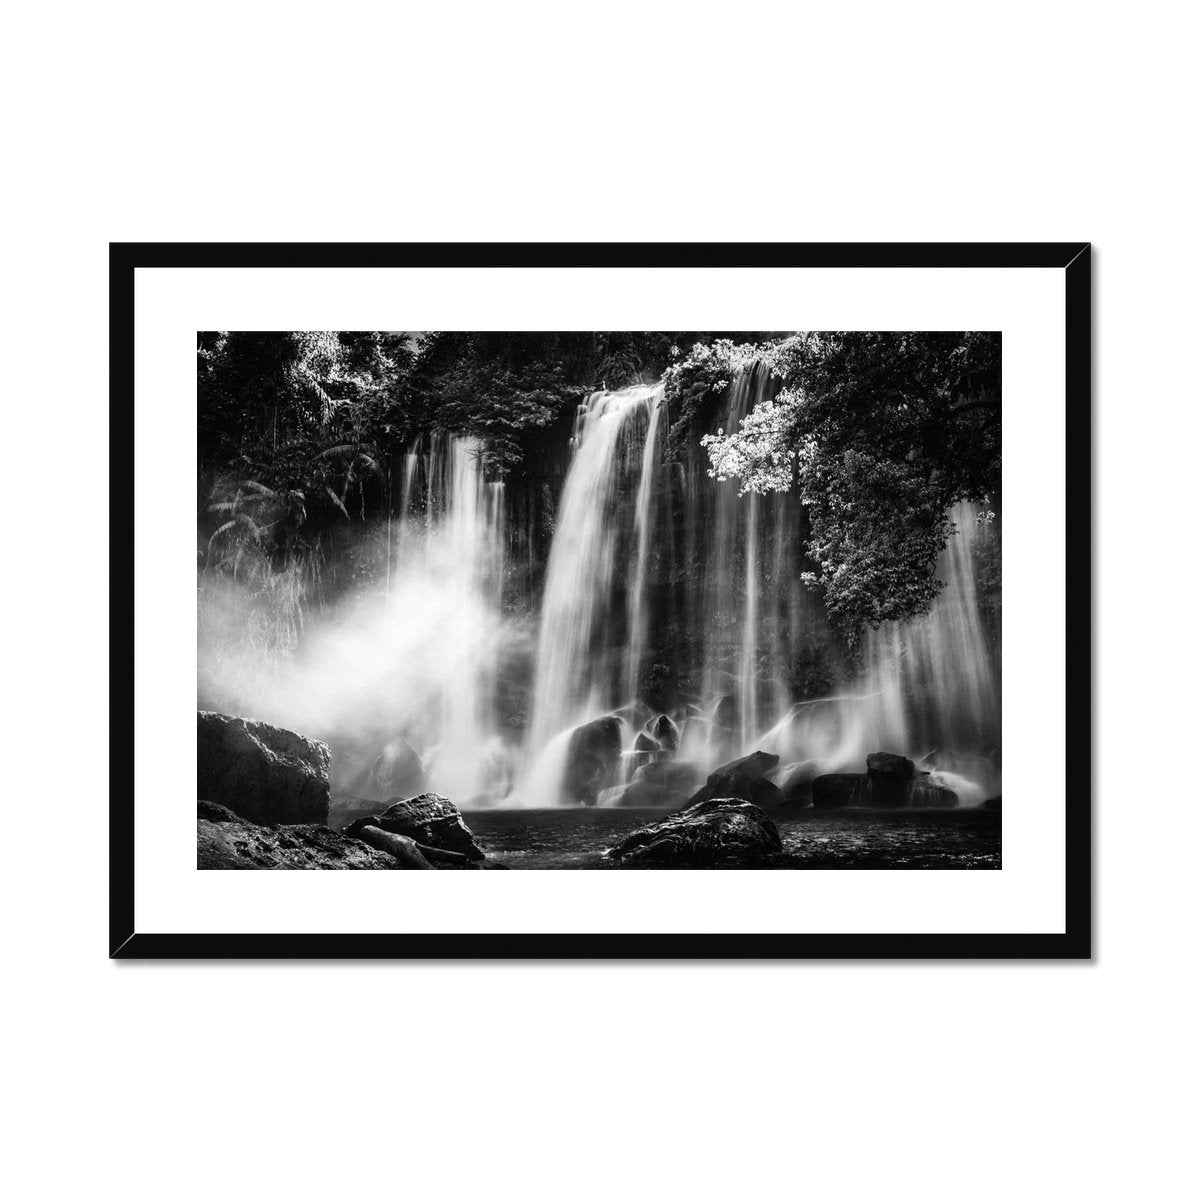 Kulen Mountain Waterfall - Sean Lee-Davies Sean Lee Davies